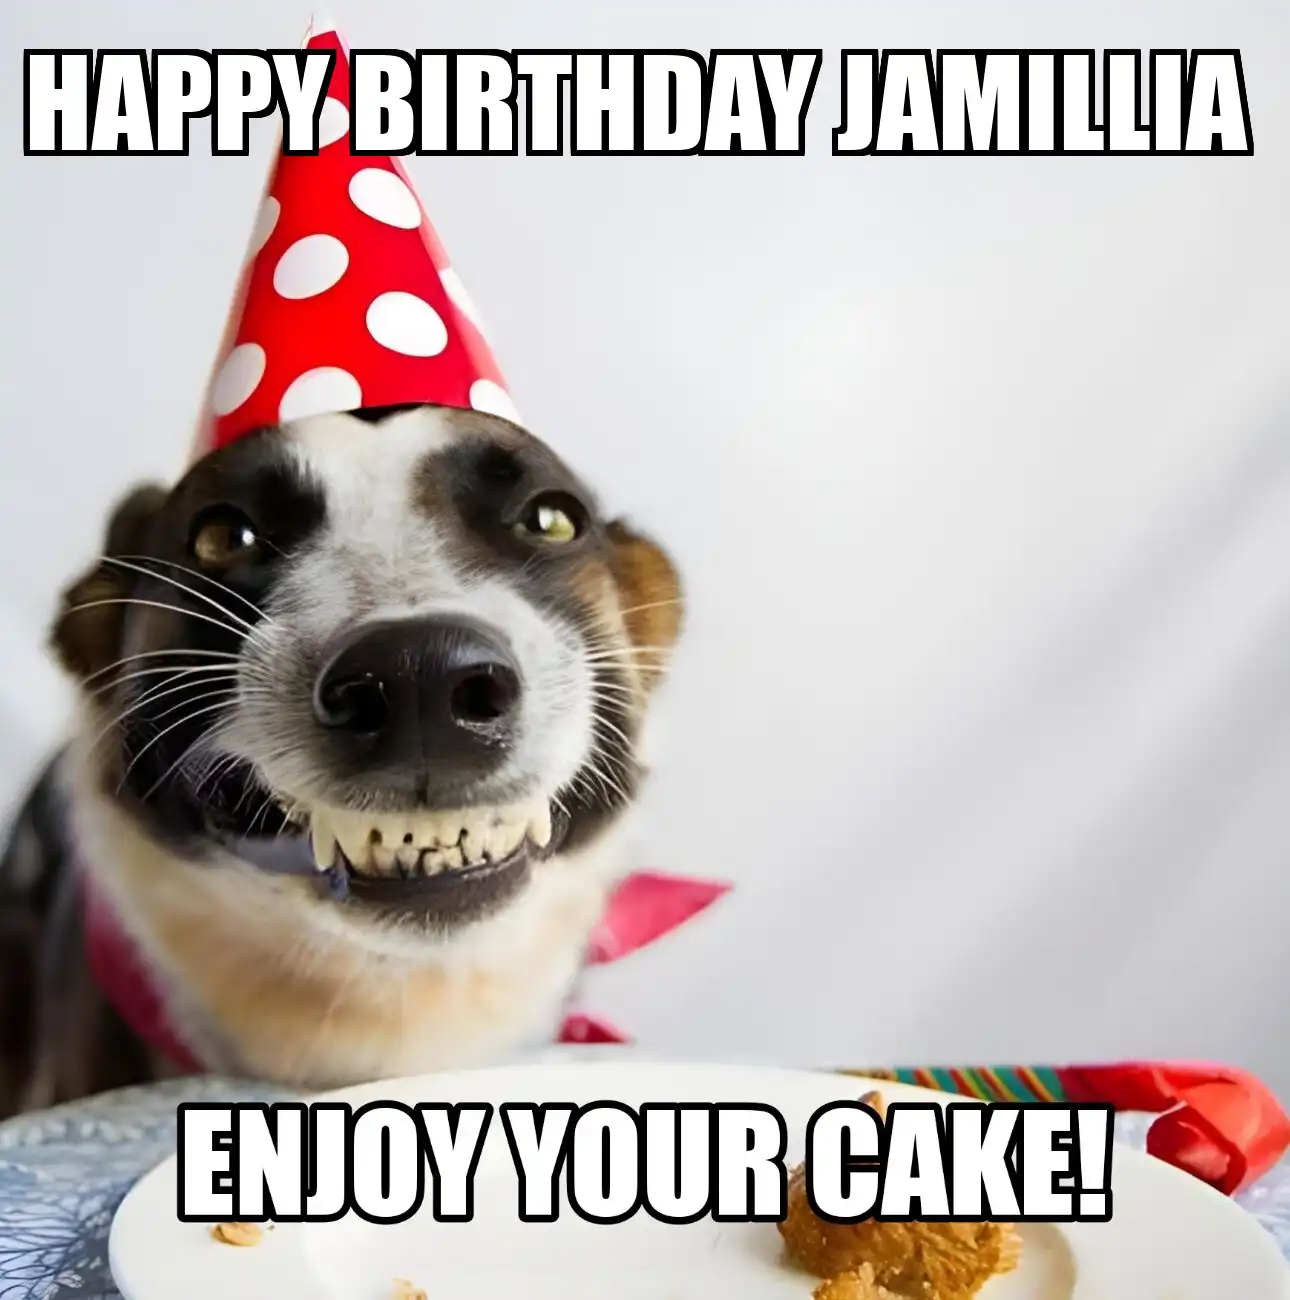 Happy Birthday Jamillia Enjoy Your Cake Dog Meme